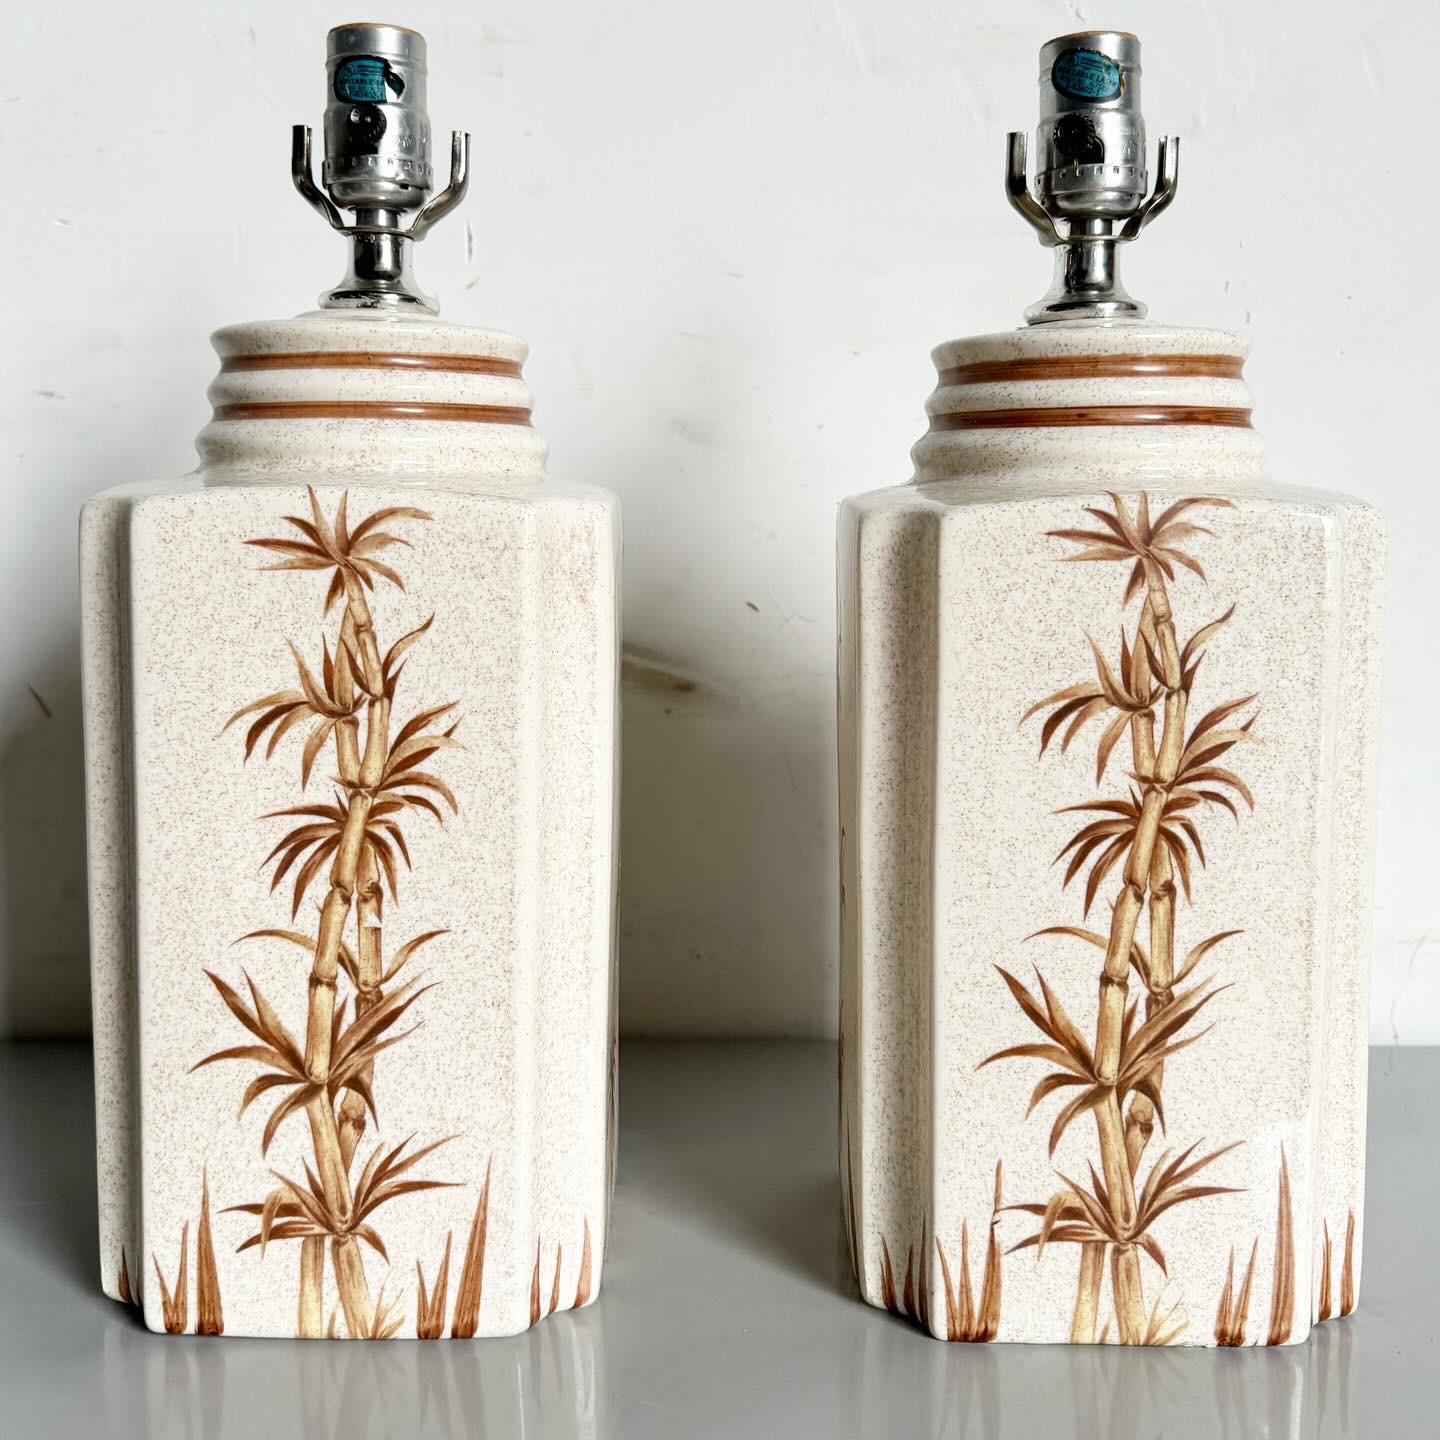 Illuminez votre espace avec les lampes de table Boho Chic Regency en céramique, avec des plantes en bambou peintes à la main. Ces lampes allient les styles Bohème et Regency avec leurs délicats motifs de bambou sur un socle en céramique, offrant une